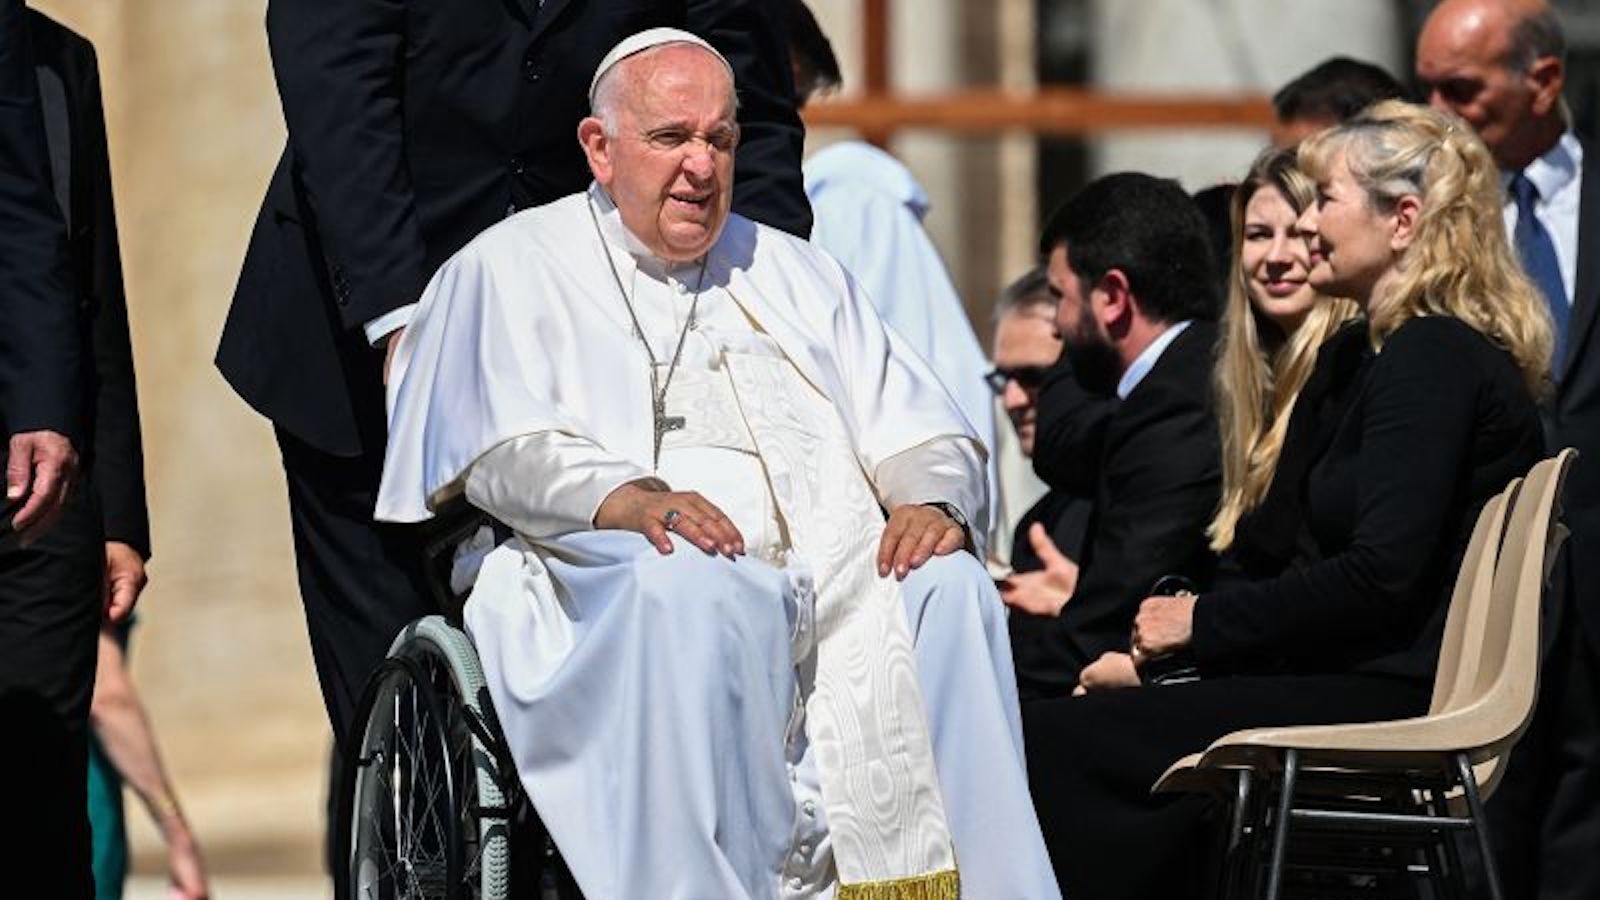 La noche del papa «estuvo bien», dice el Vaticano tras la cirugía abdominal de Francisco, dice el Vaticano